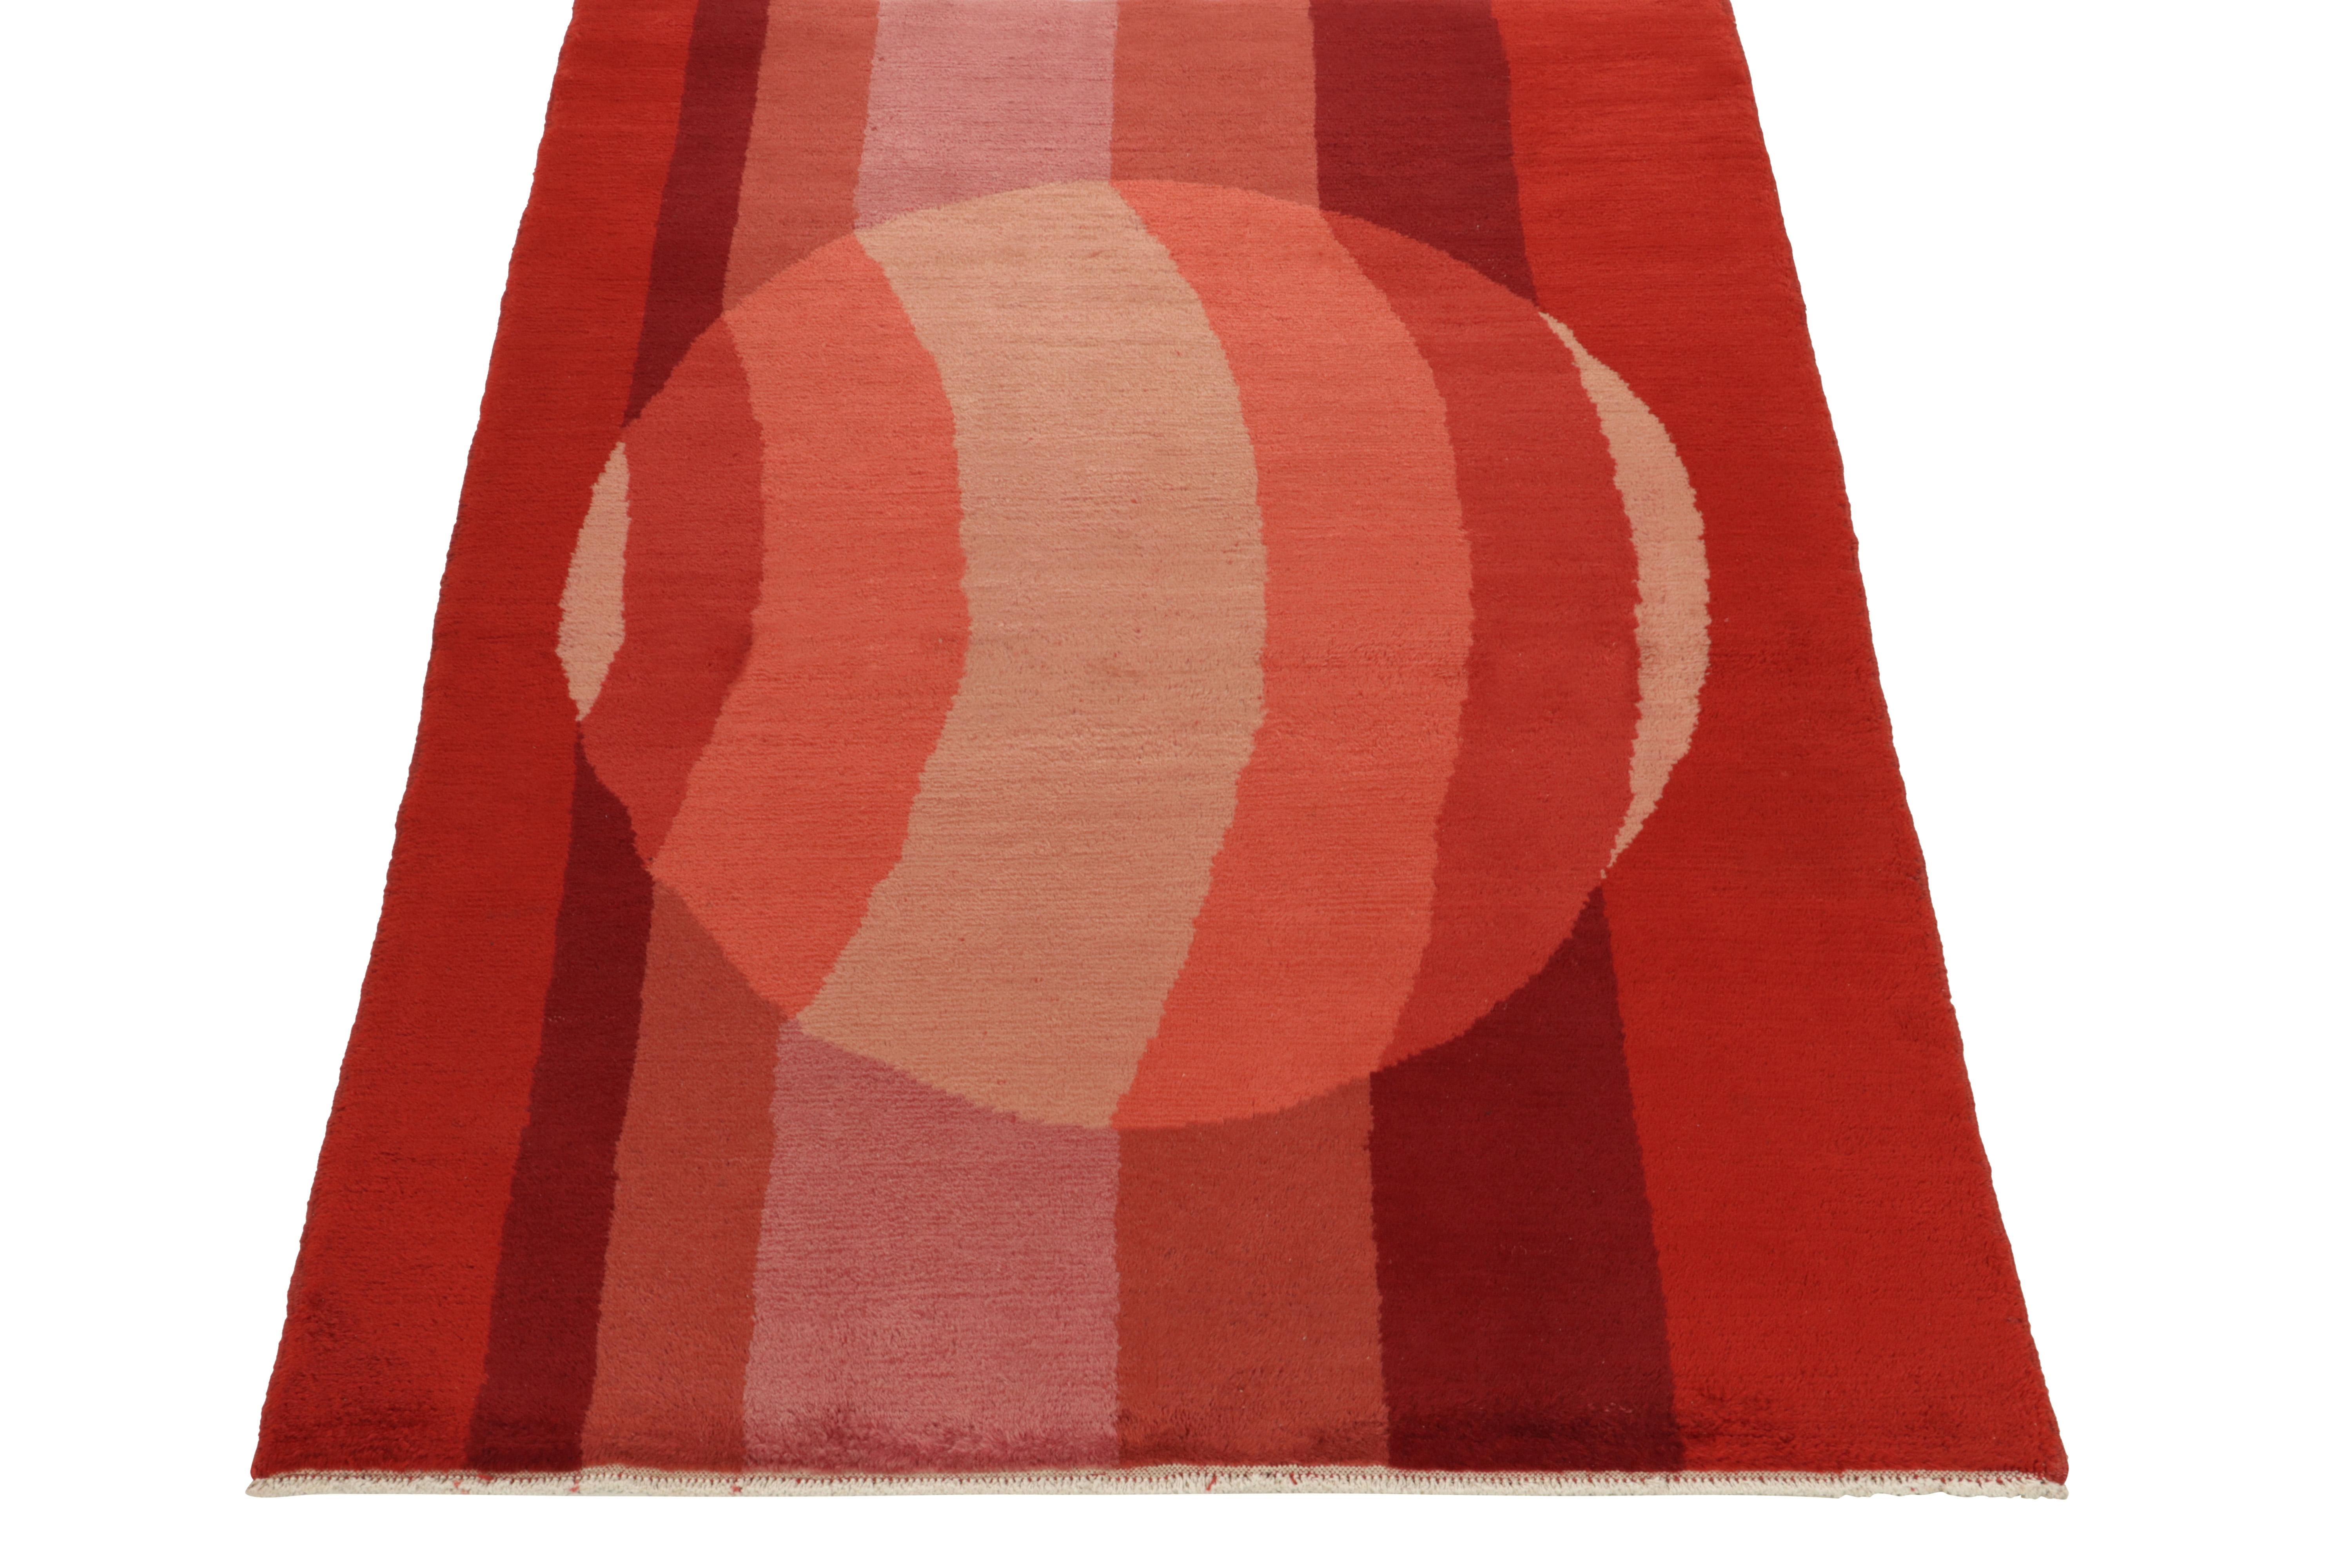 Noué à la main en laine, ce tapis vintage de Turquie datant des années 1970-1980 présente une approche moderne unique pour l'époque. Jouant d'une sensibilité linéaire déco avec une dimensionnalité abstraite, la vision dépeint un effet similaire à